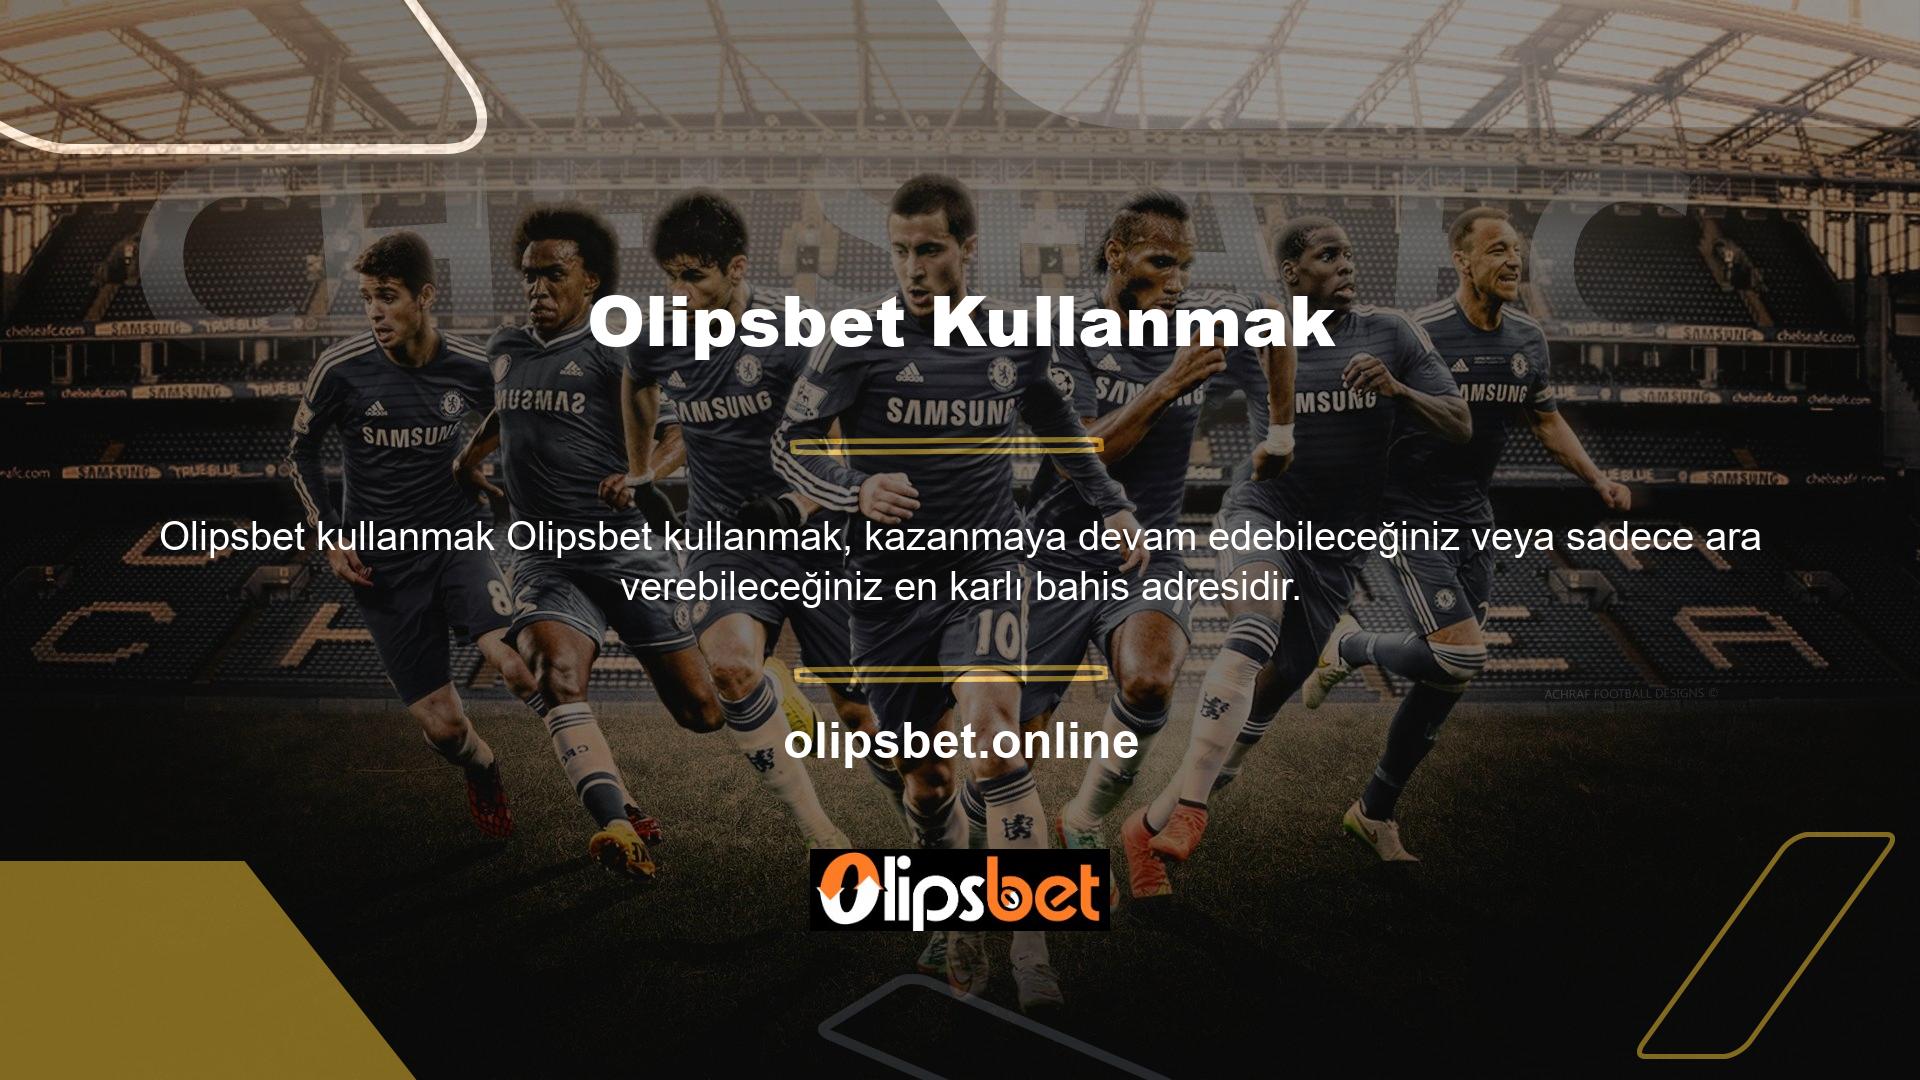 Türkiye'nin en büyük casino sitelerinden biri olan Olipsbet, internetteki yüksek oyun hızlarıyla kullanıcıların beğenisini kazanmaya devam ediyor